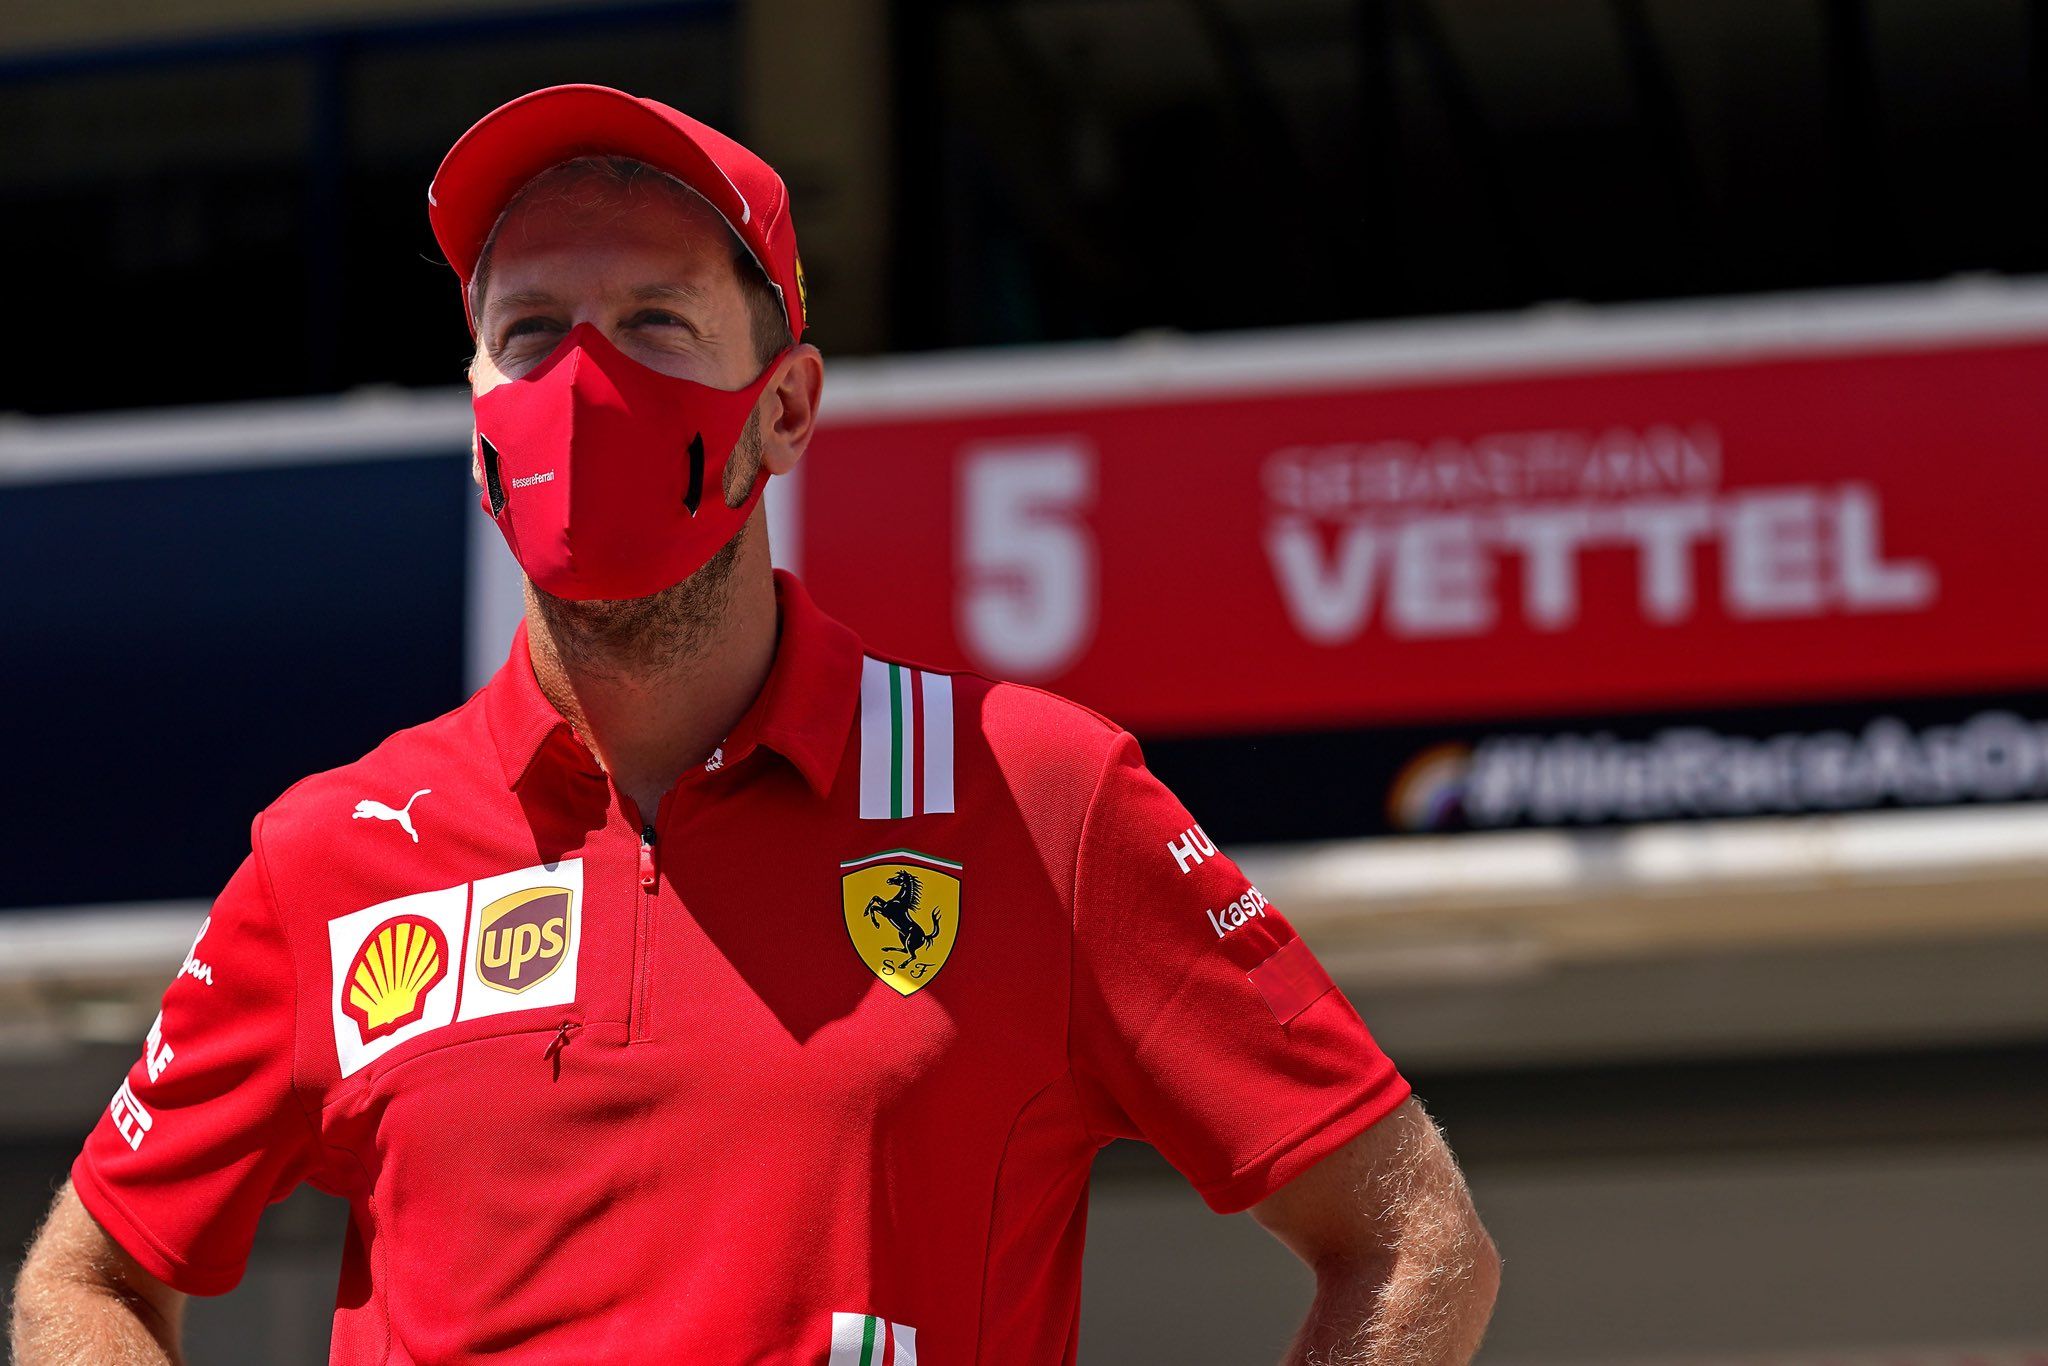 Sebastian Vettel leaves Ferrari, to race for Aston Martin in 2021